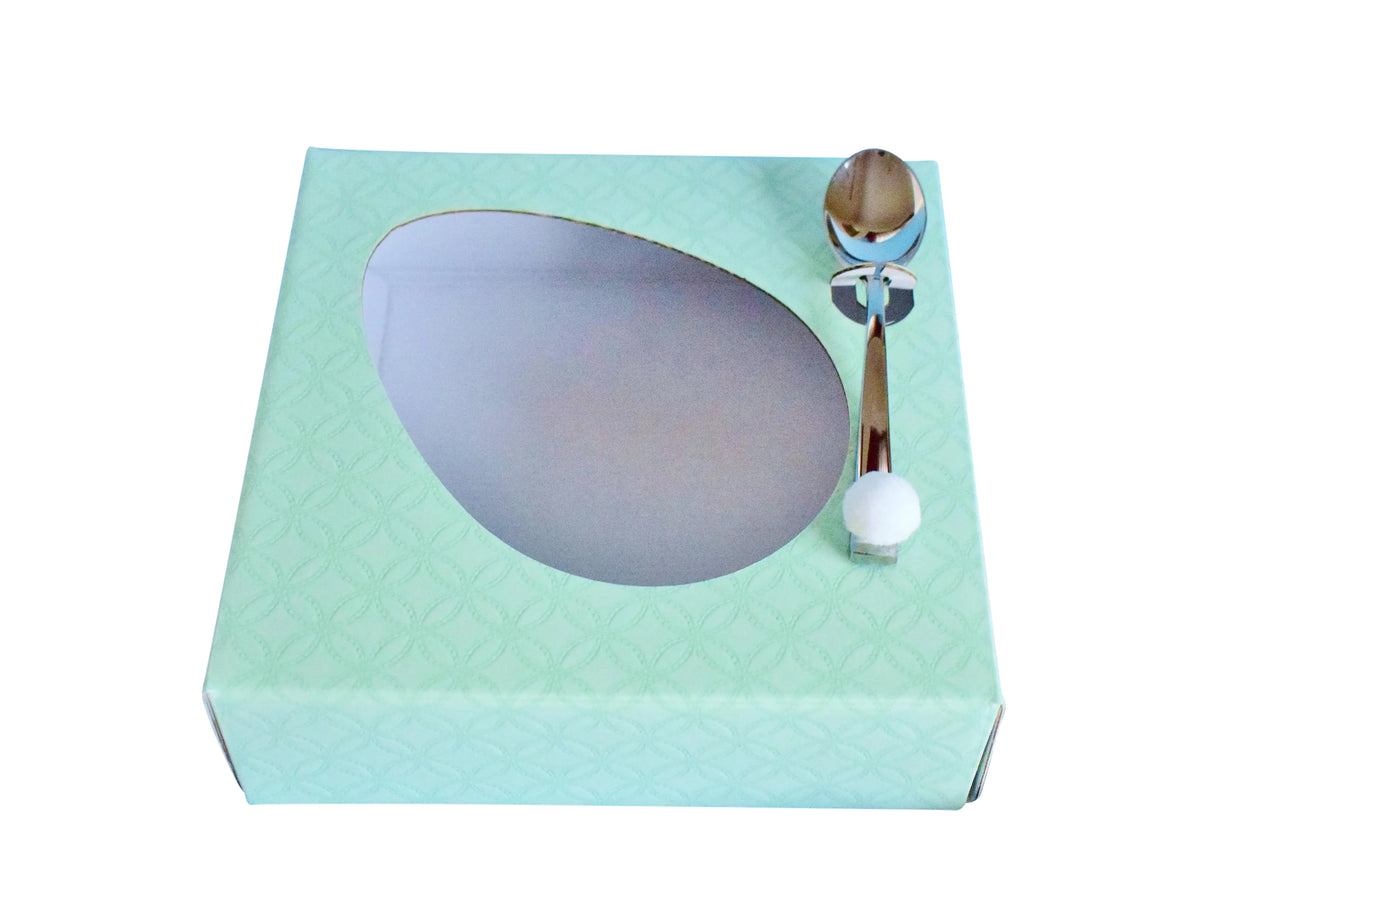 Κουτάκι για μισό σοκολατένιο αυγό με διάφανο καπάκι και βάση πράσινη - Μέντα